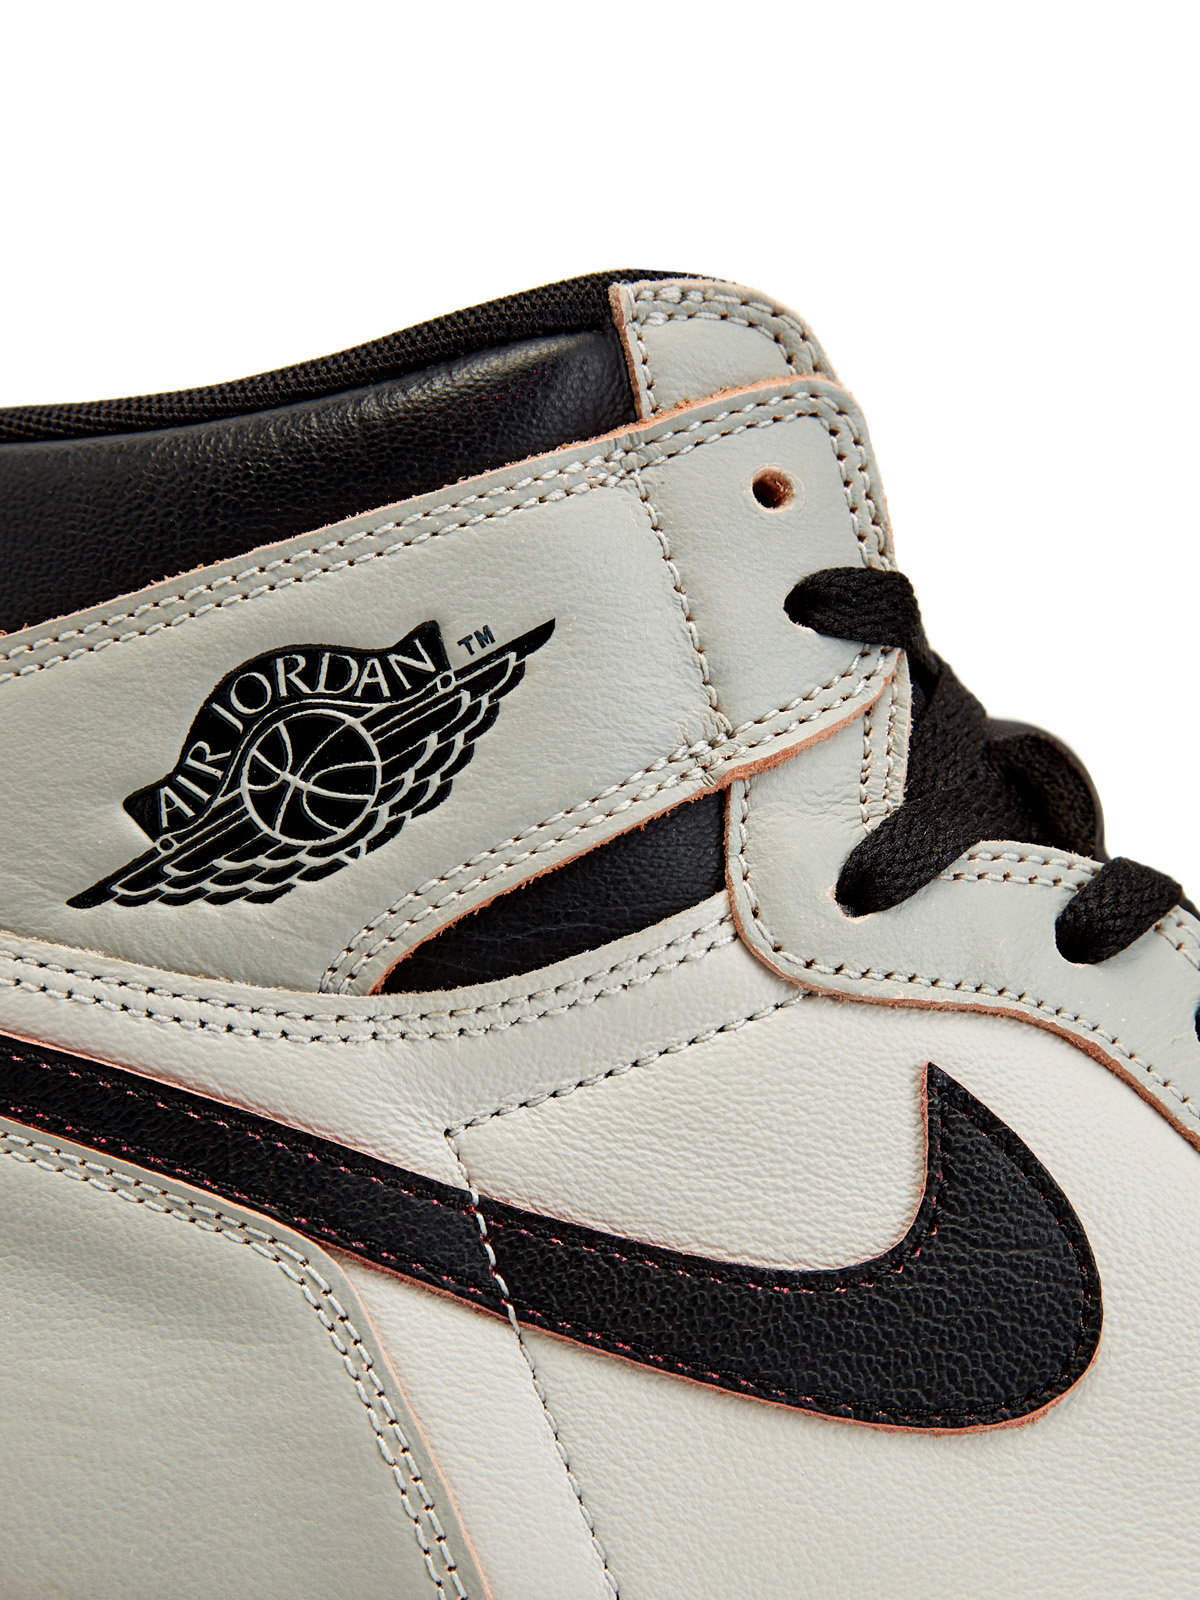 Кроссовки Nike SB x Jordan 1 High OG Defiant 'NYC to Paris' Jordan, цвет серый, размер 45 - фото 4